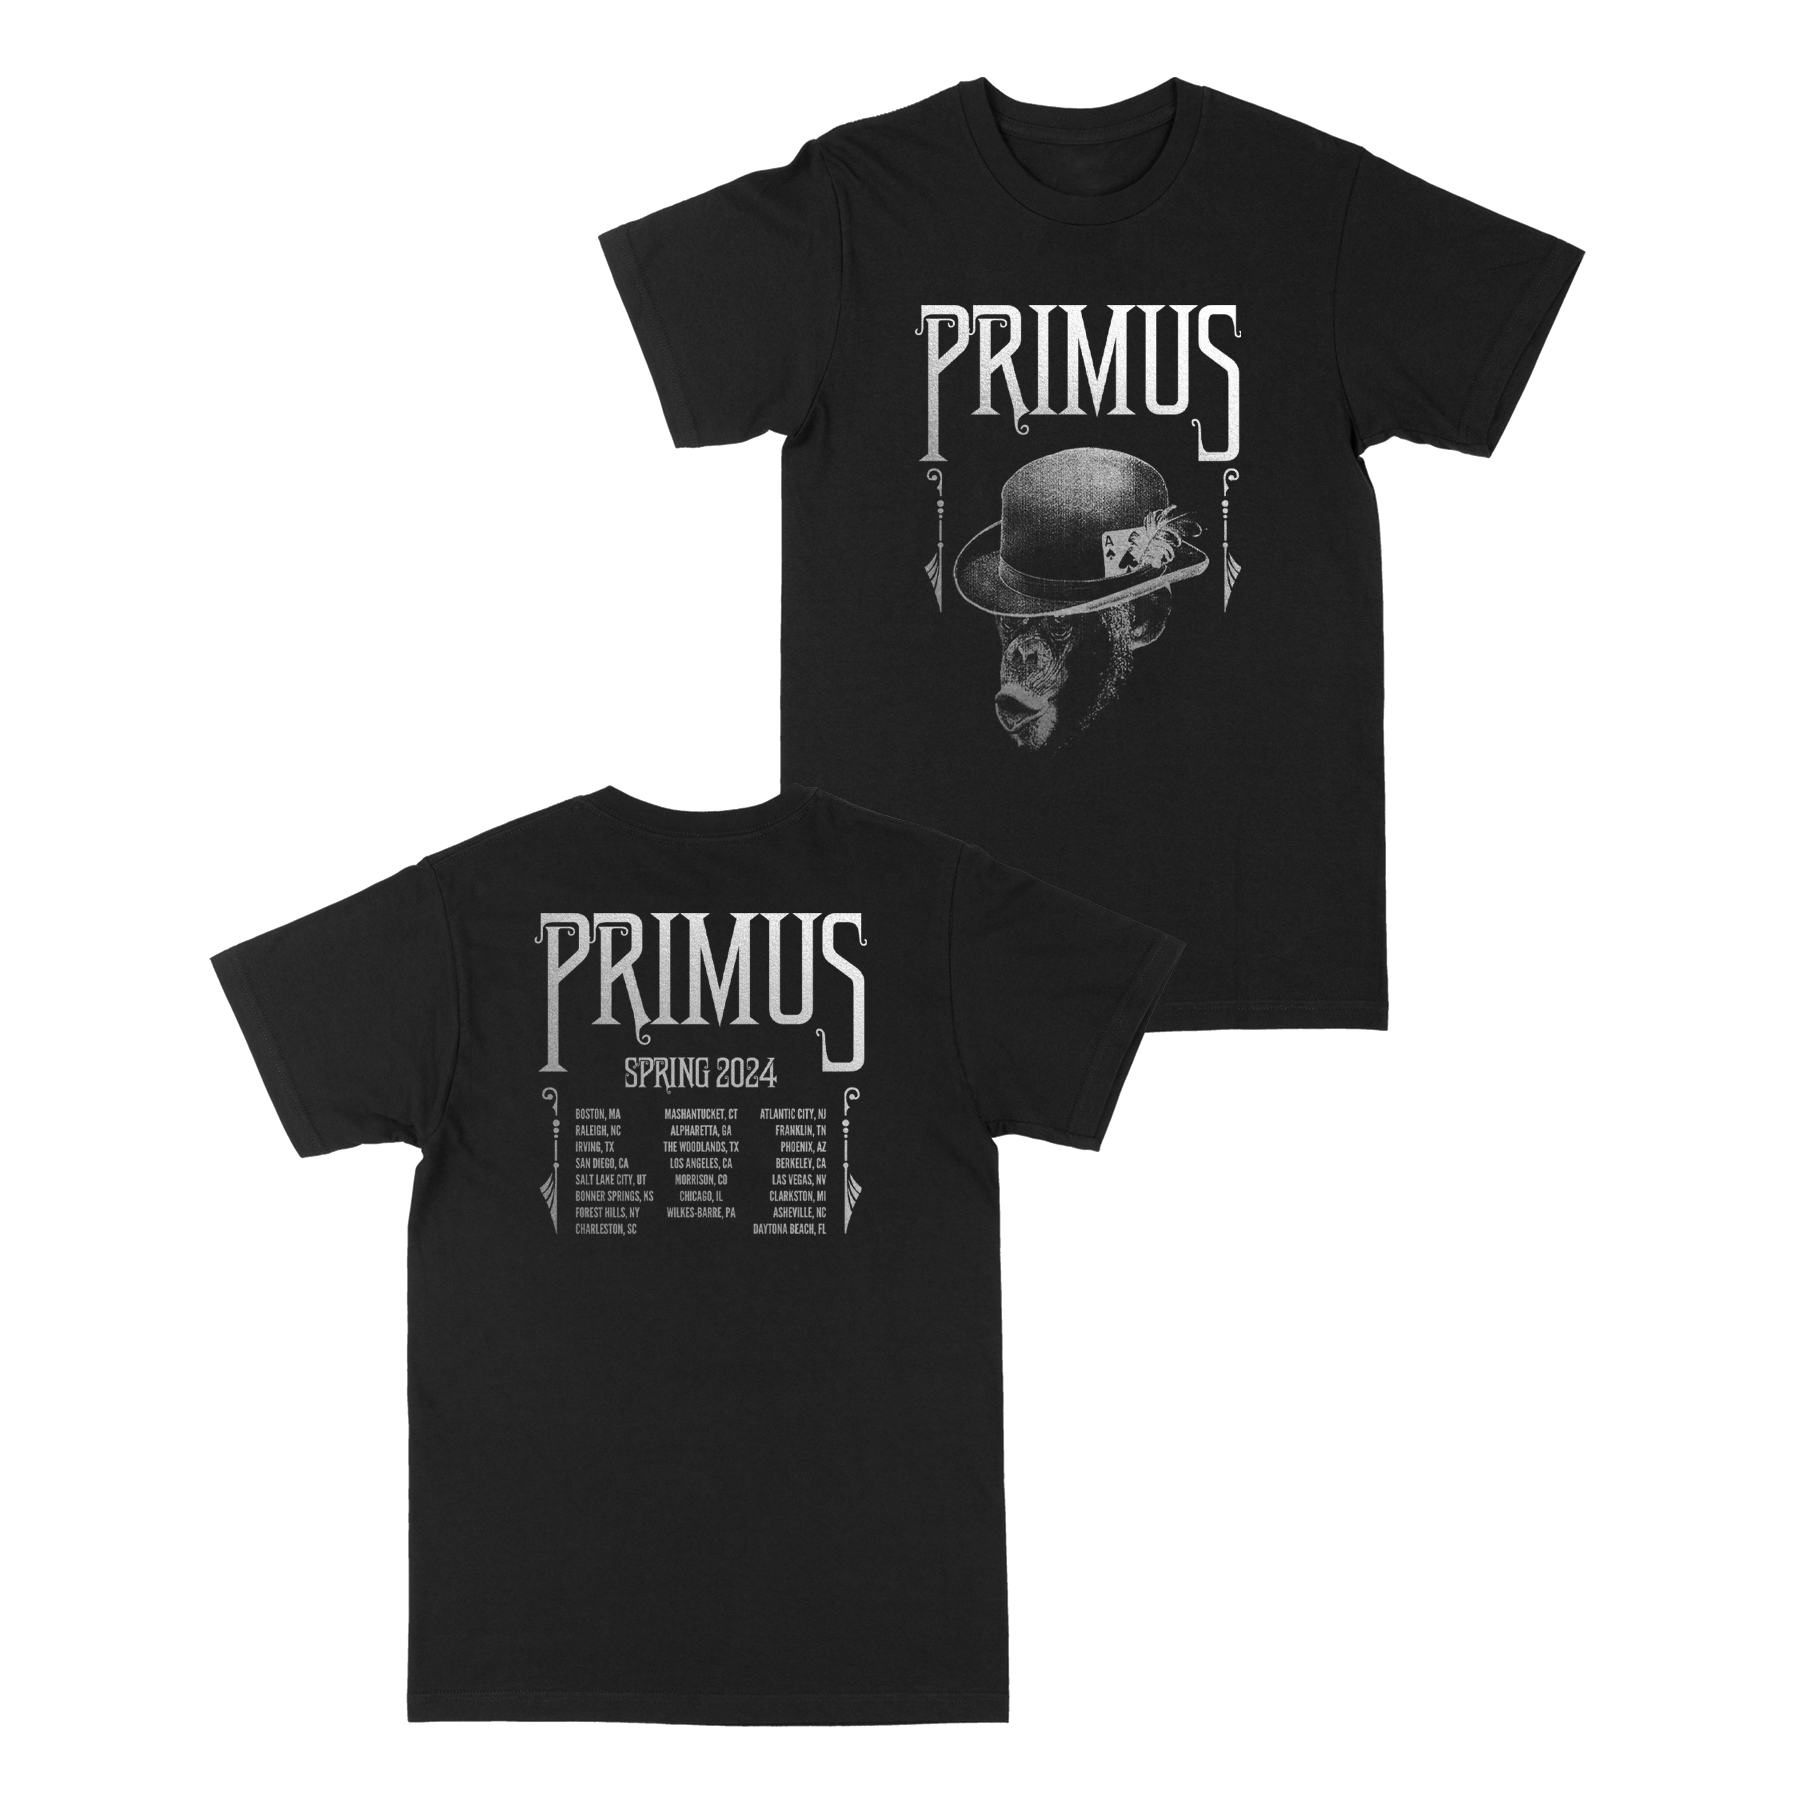 Primus - Monkey Tour T-Shirt - Spring 2024